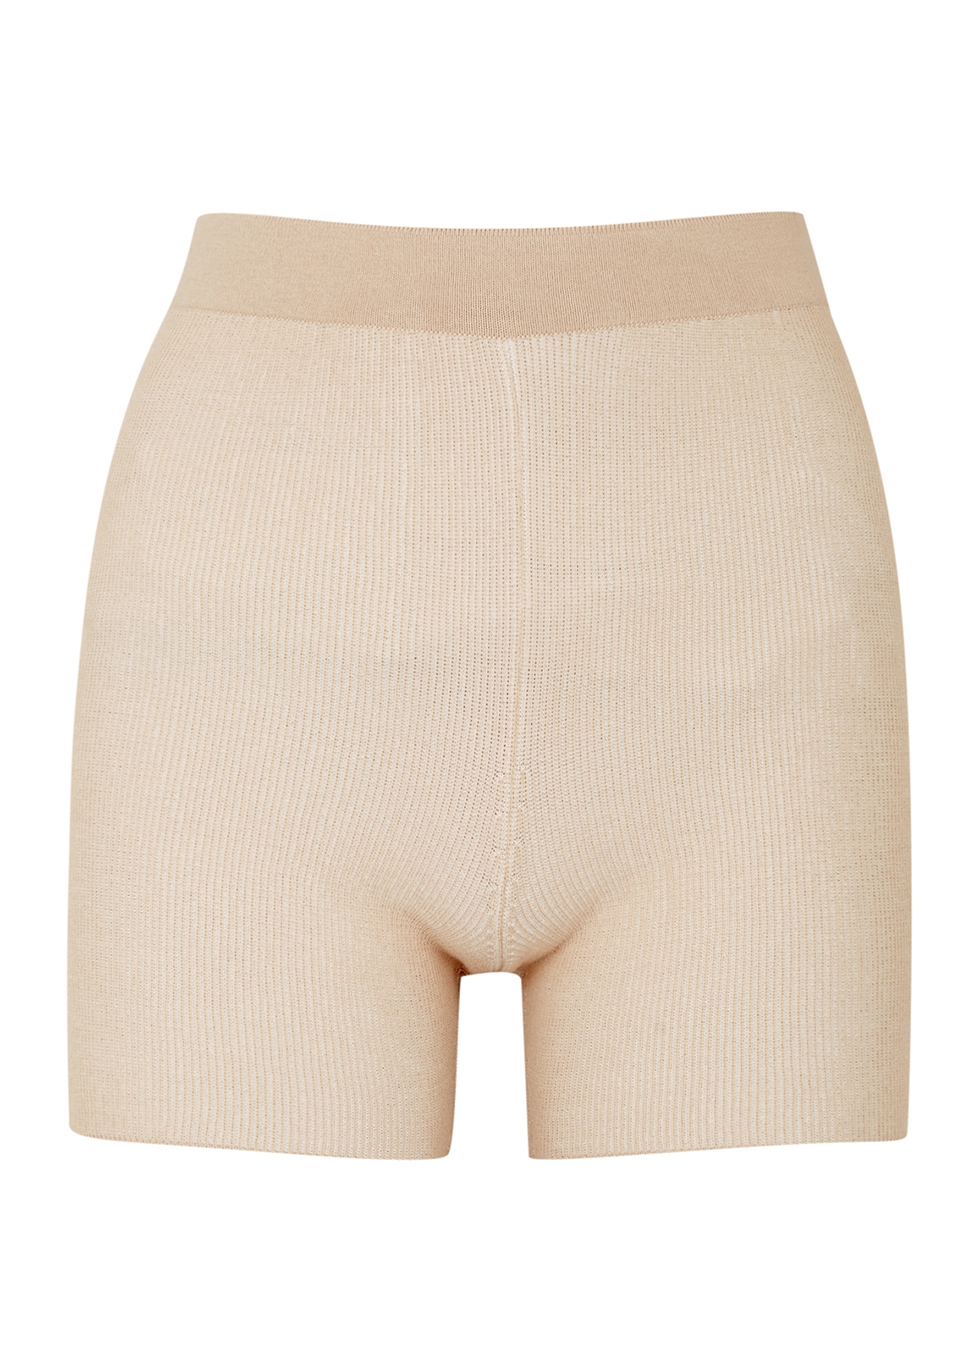 Le Short Arancia sand ribbed-knit shorts